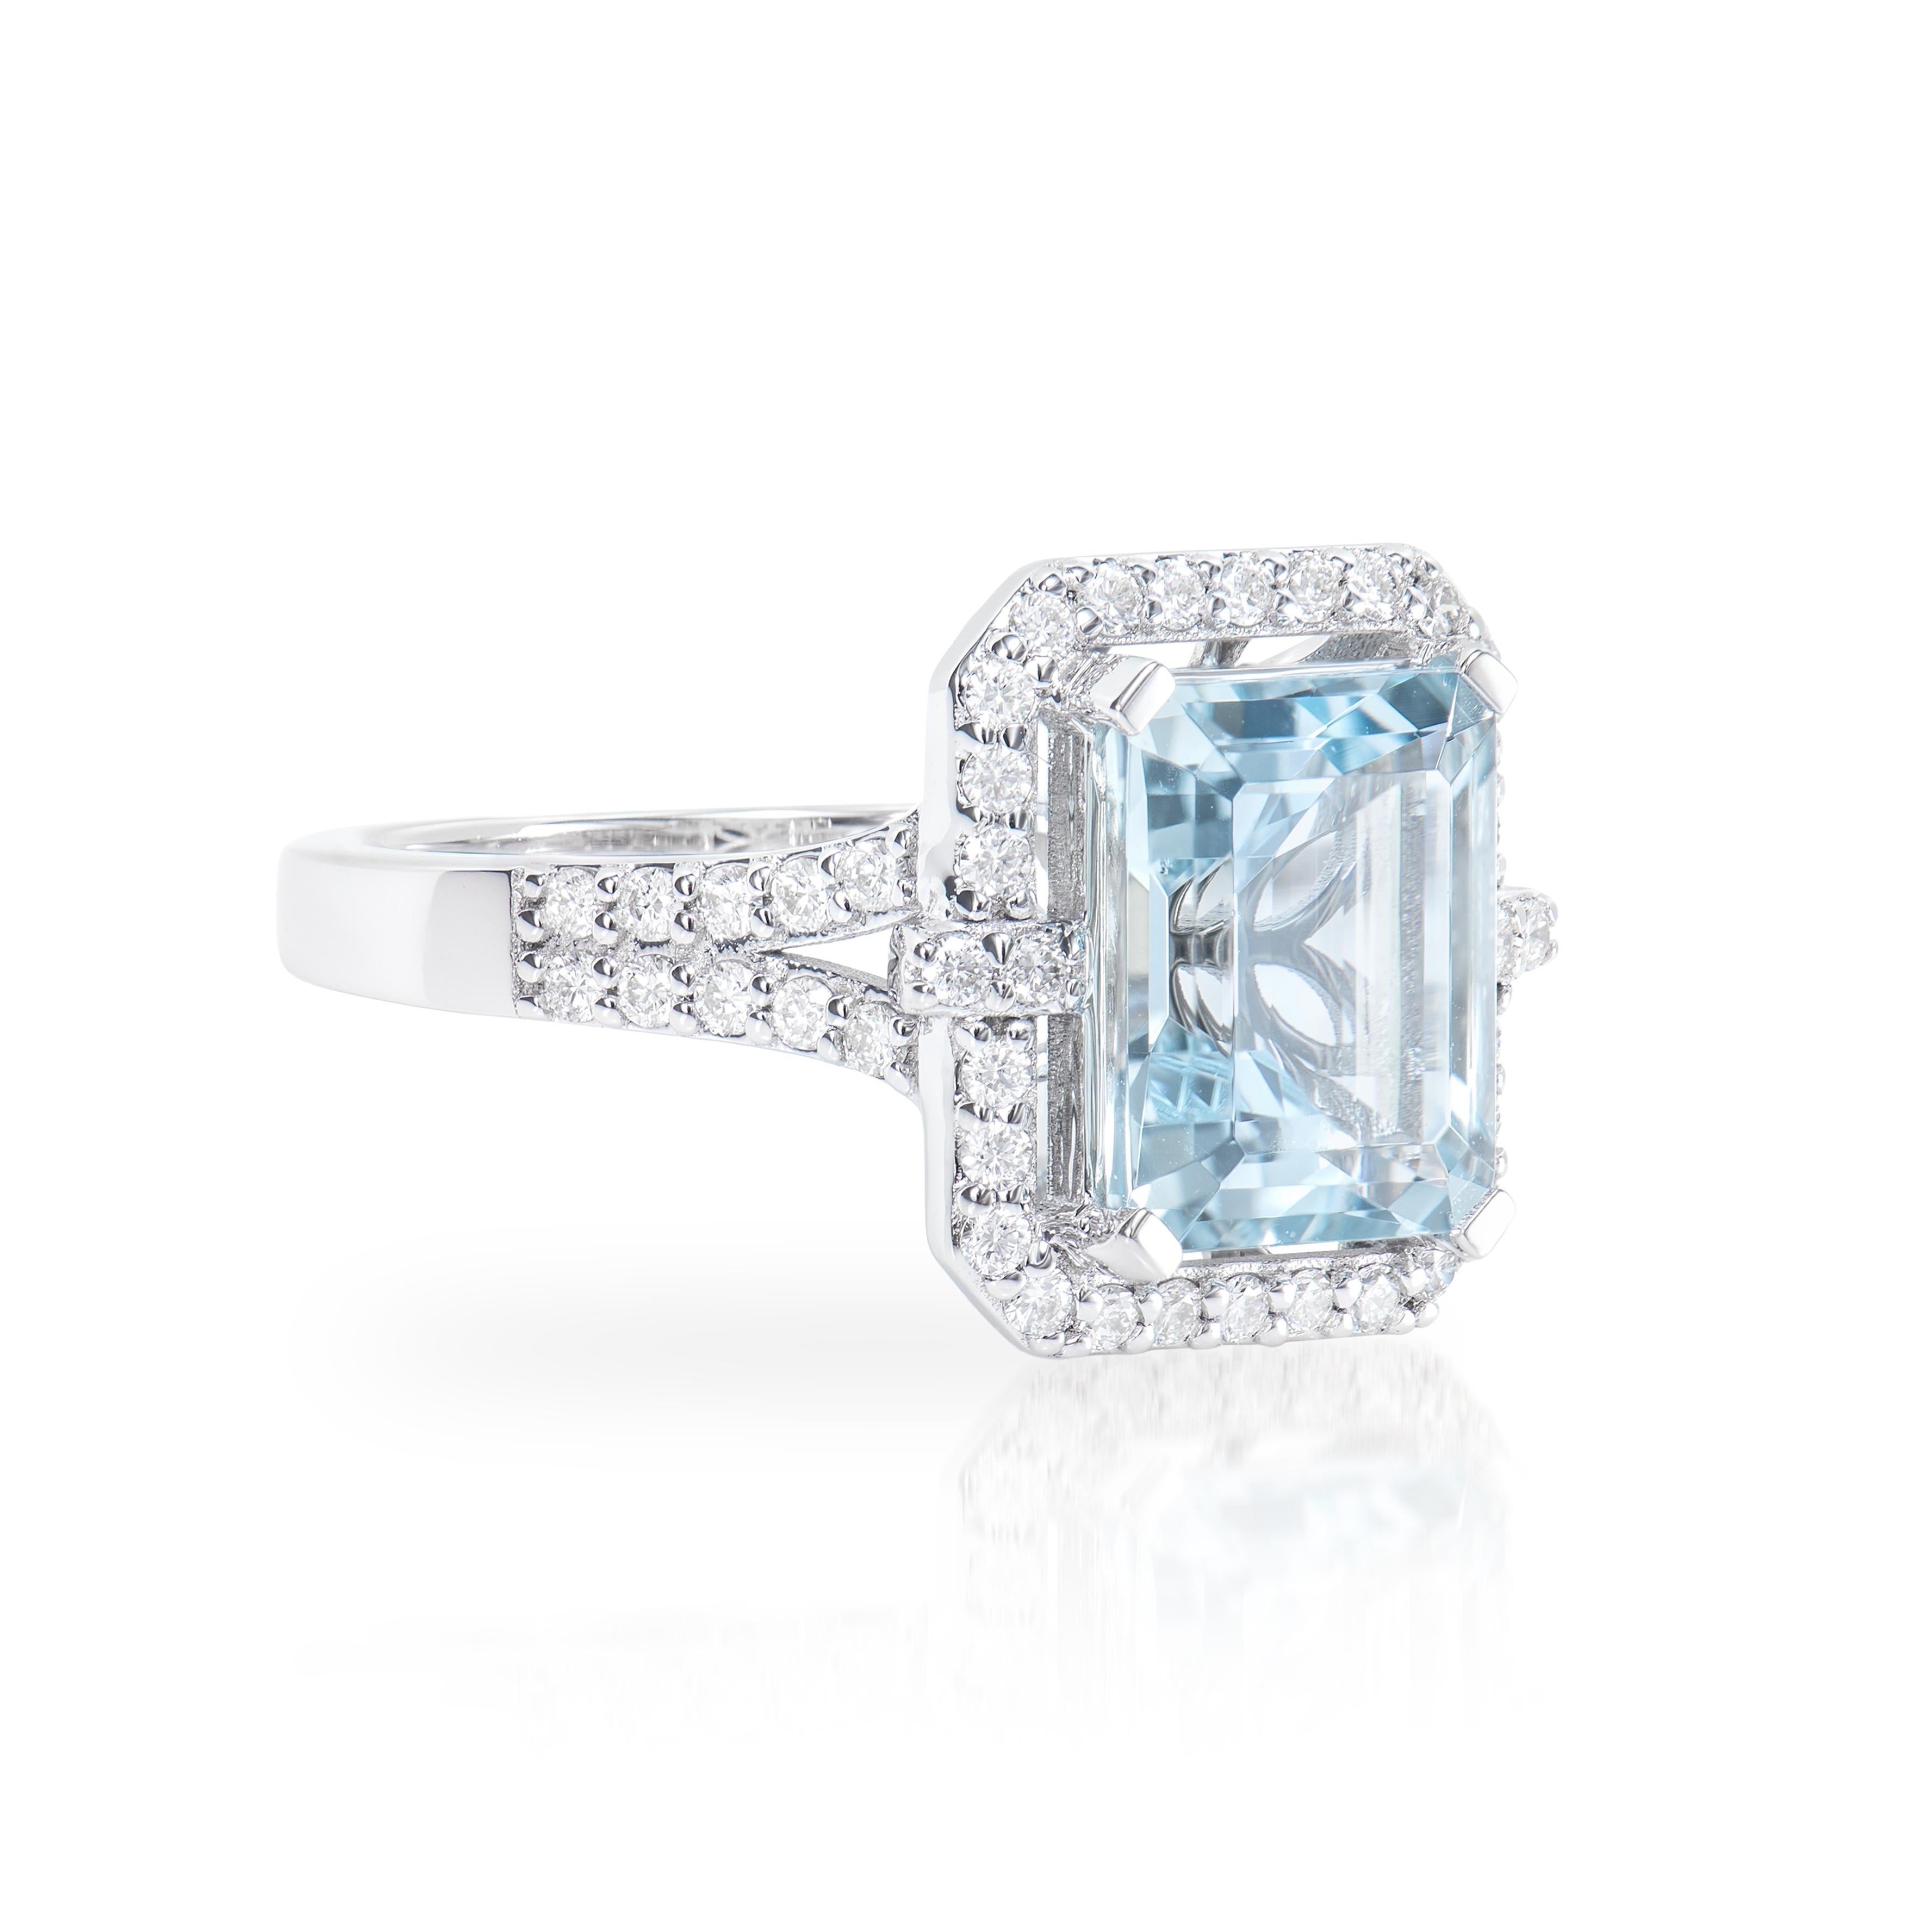 Diese Kollektion bietet eine Reihe von Aquamarinen mit einem eisblauen Farbton, der so cool ist, wie er nur sein kann! Der mit weißen Diamanten besetzte Ring ist aus Weißgold gefertigt und präsentiert sich klassisch und elegant. 

Eleganter Ring mit